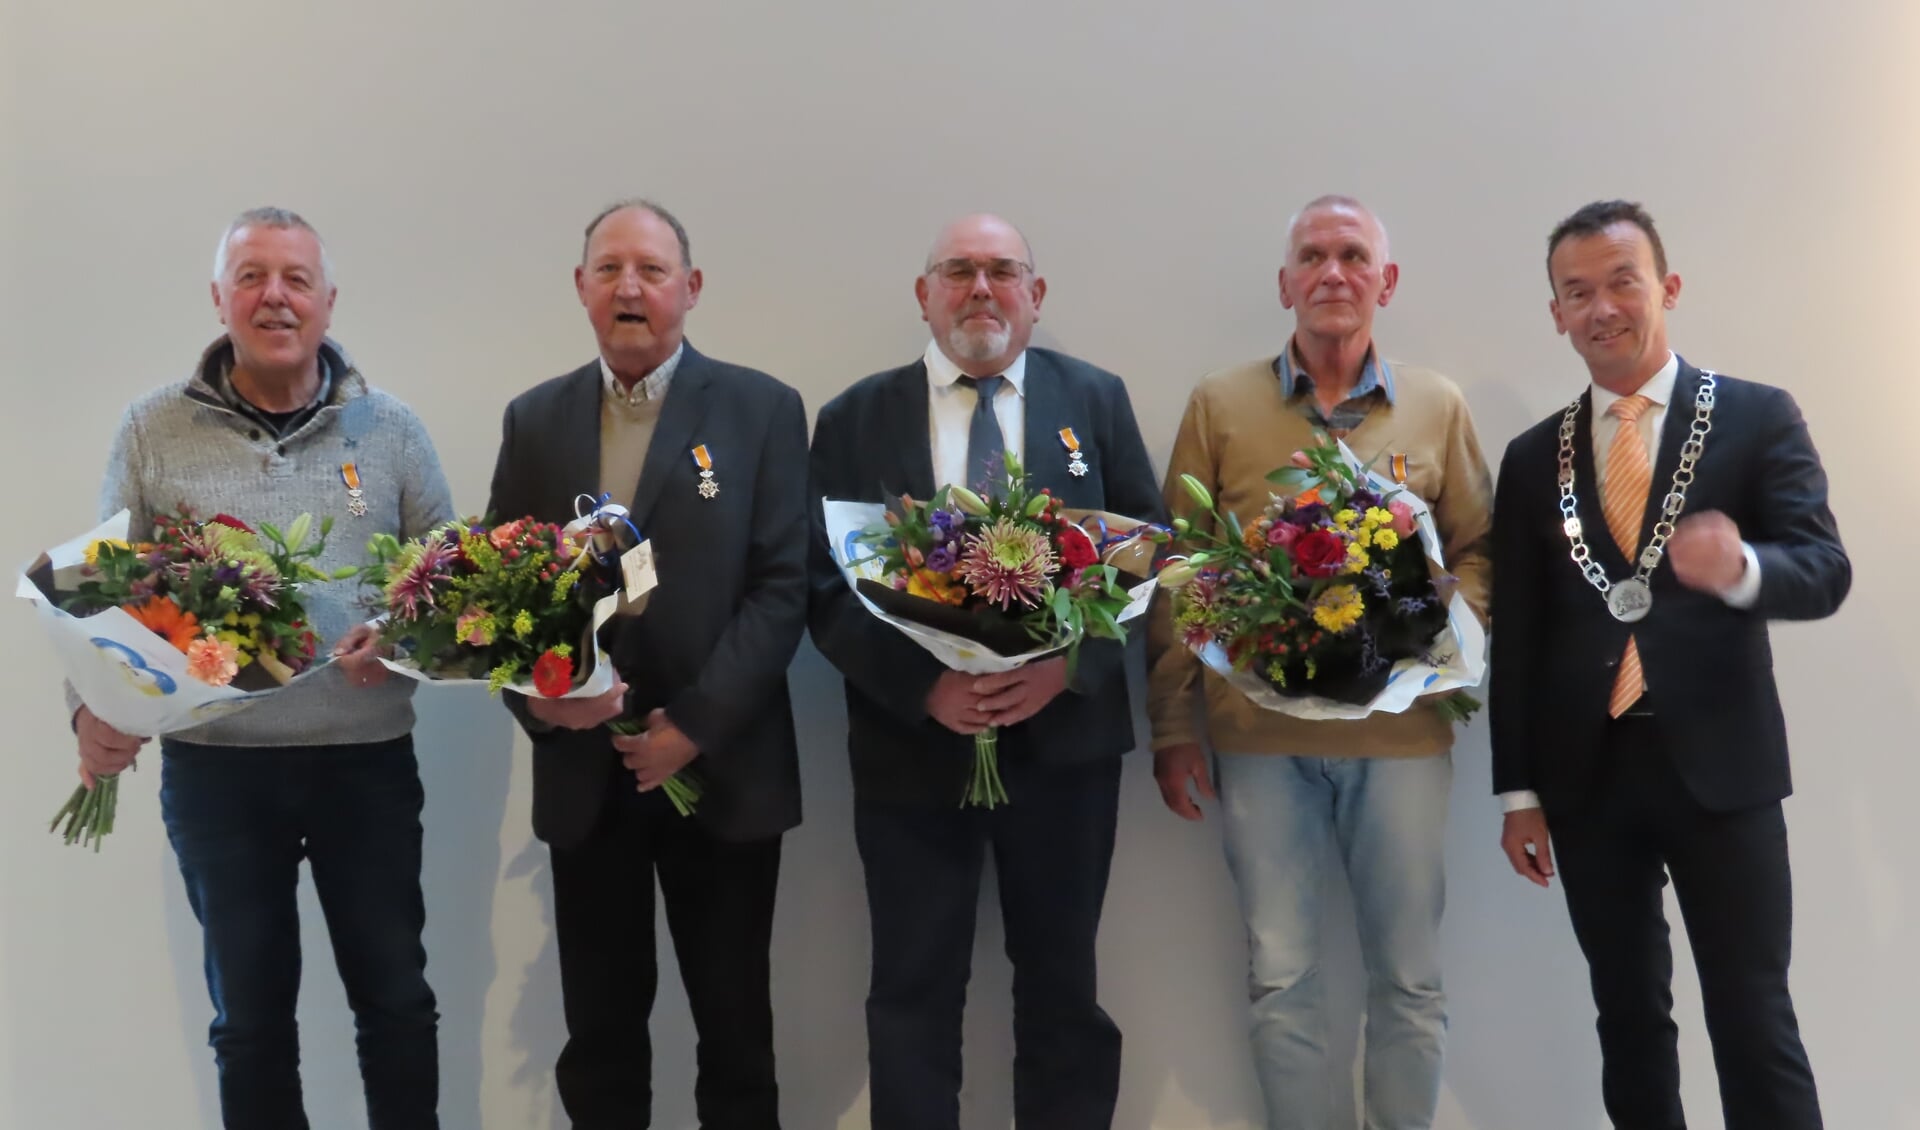 De mannen van het Gelders Eiland: Wim Goris, Frans Willemsen, Jan van de Zand en Bertus van Vuuren